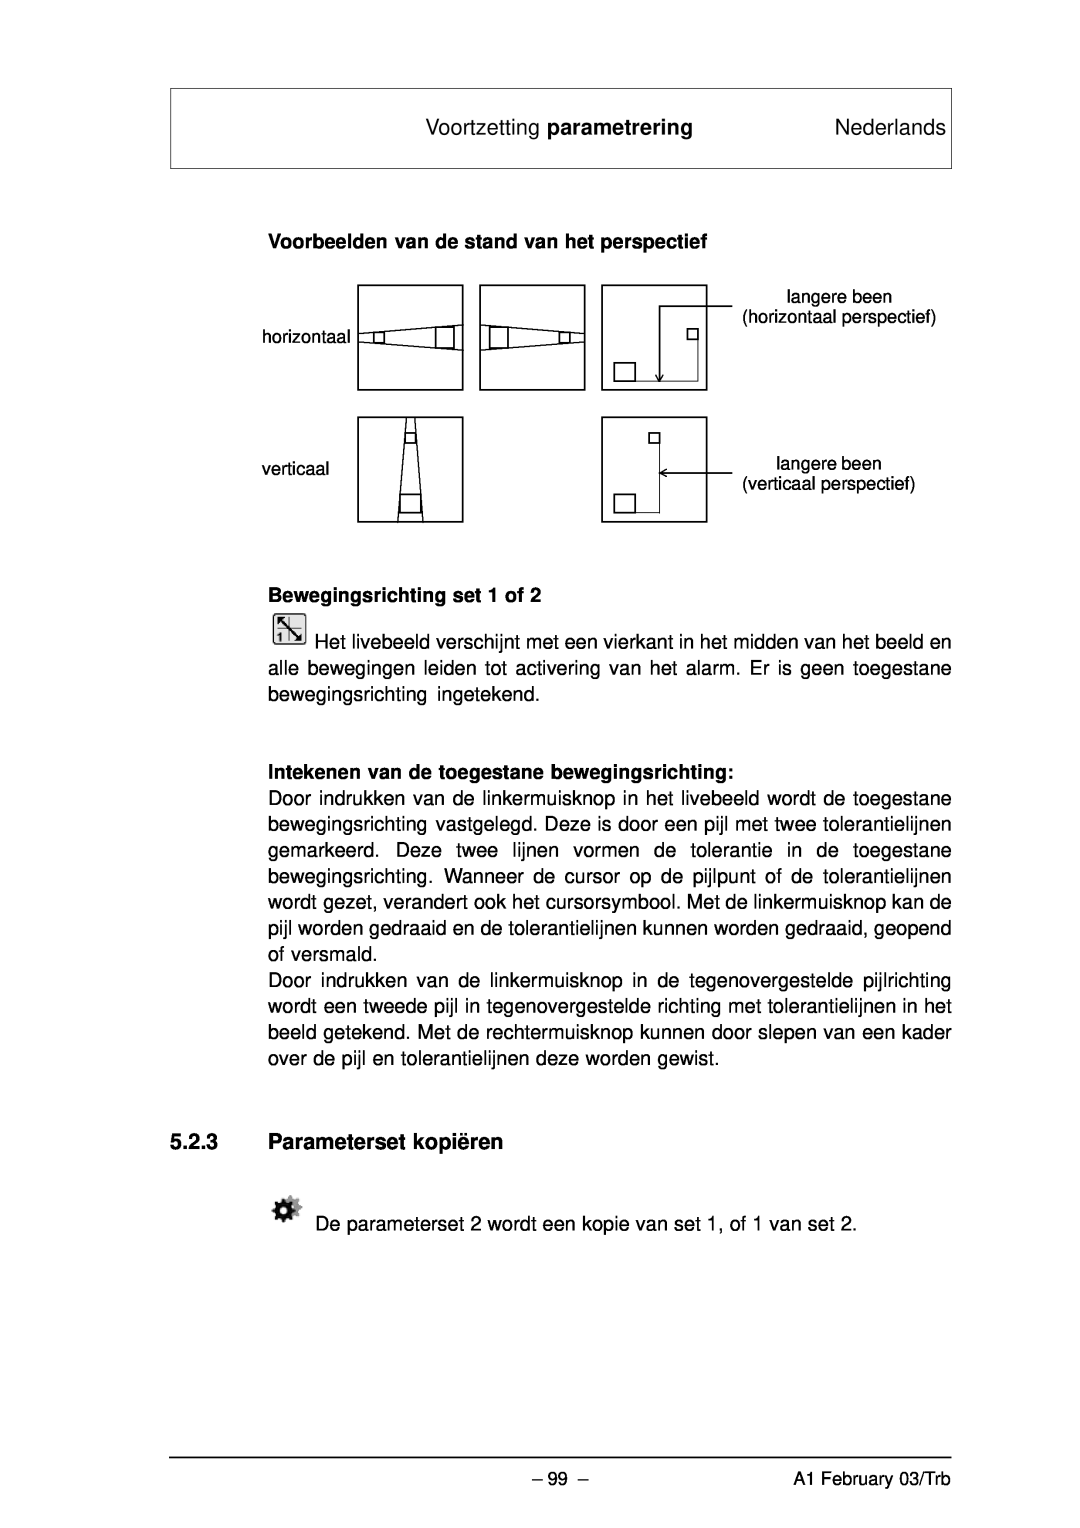 Bosch Appliances VMD01 M50 PAL manual Voortzetting parametrering, Nederlands, Voorbeelden van de stand van het perspectief 